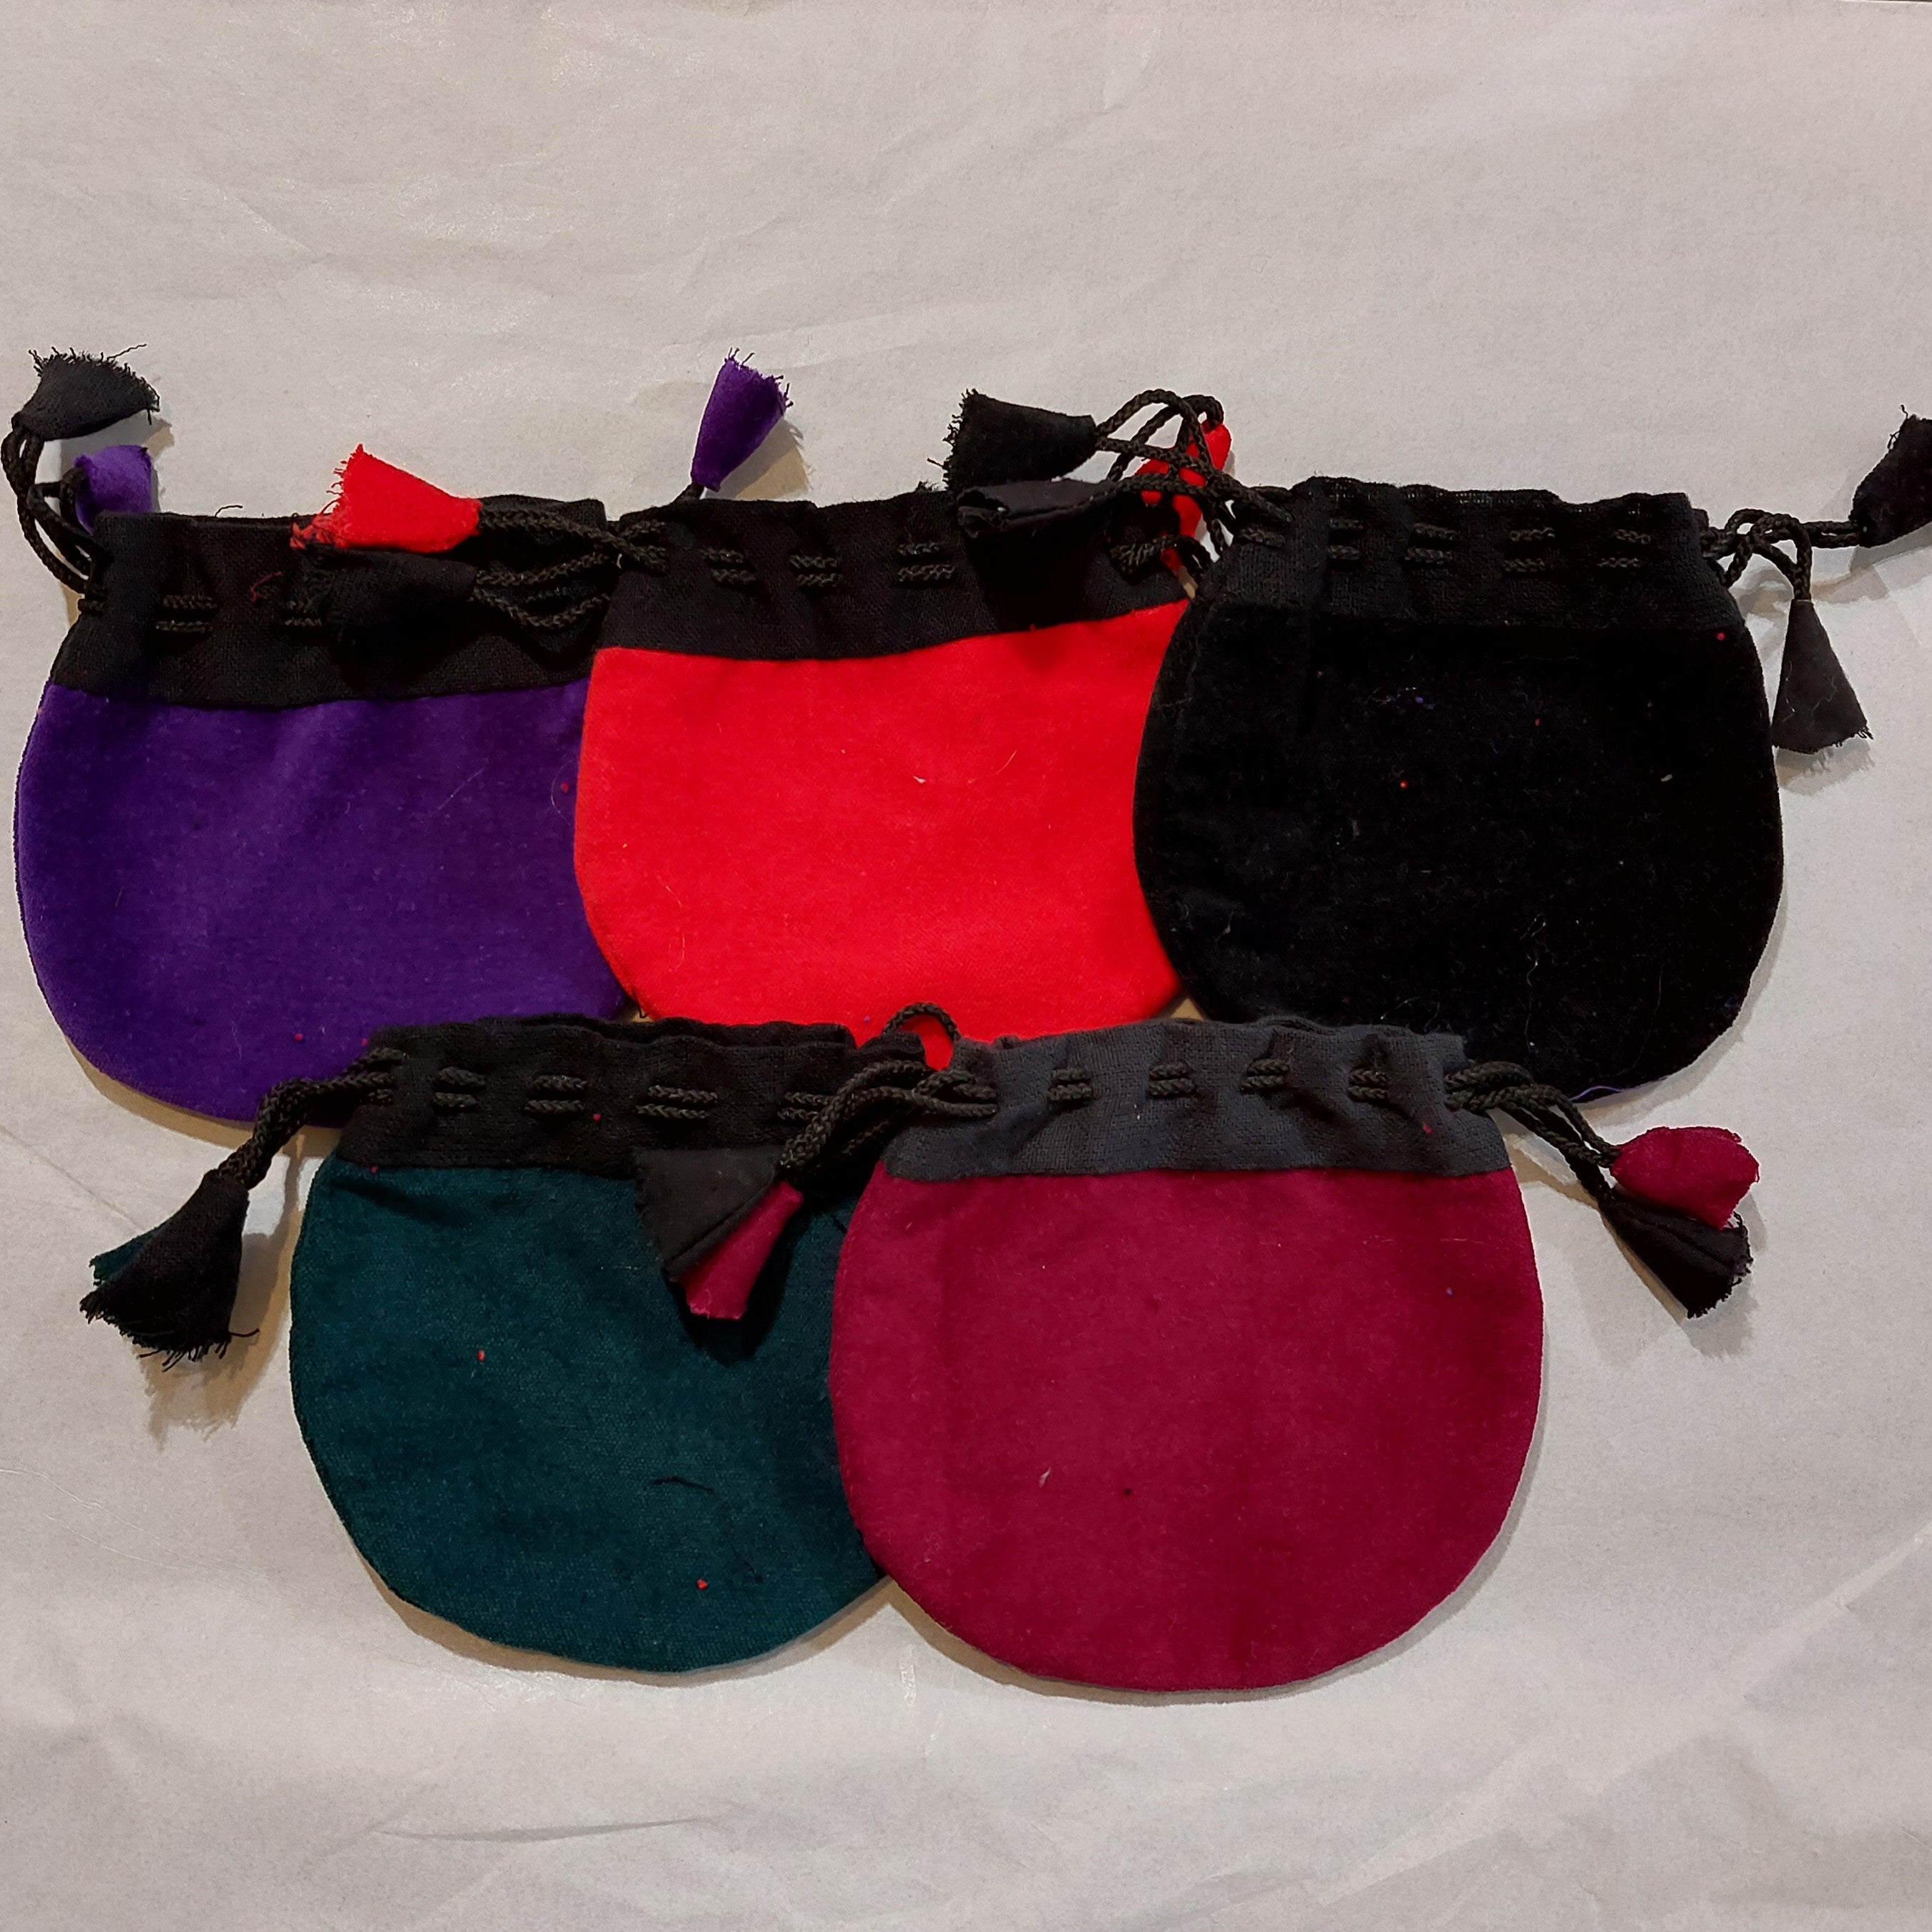 Buy Velvet Handbags Online In India - Etsy India